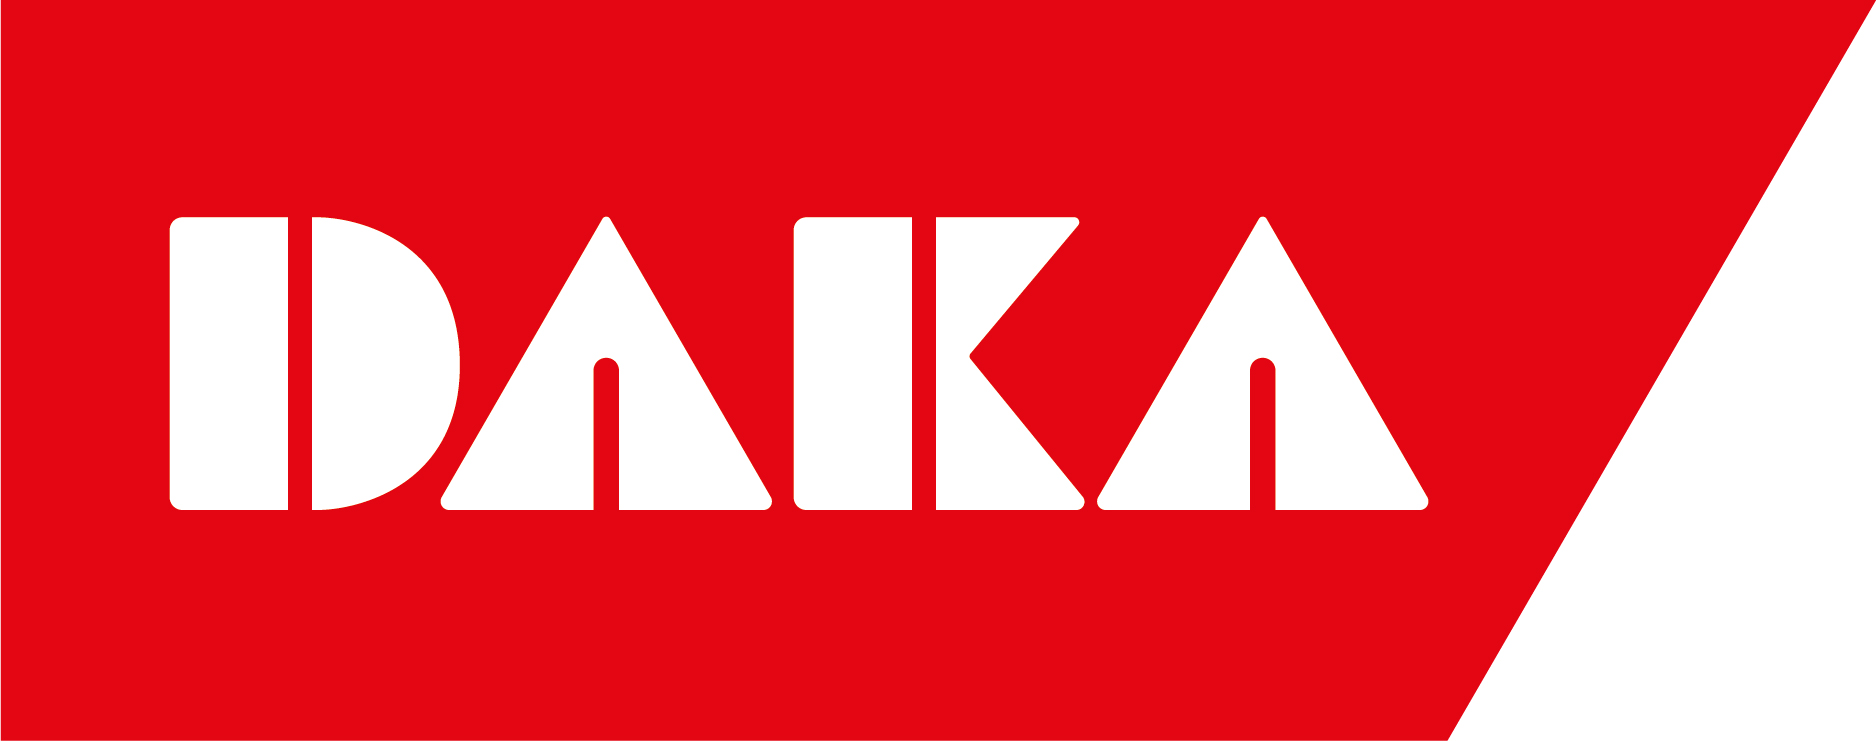 DAKA logo